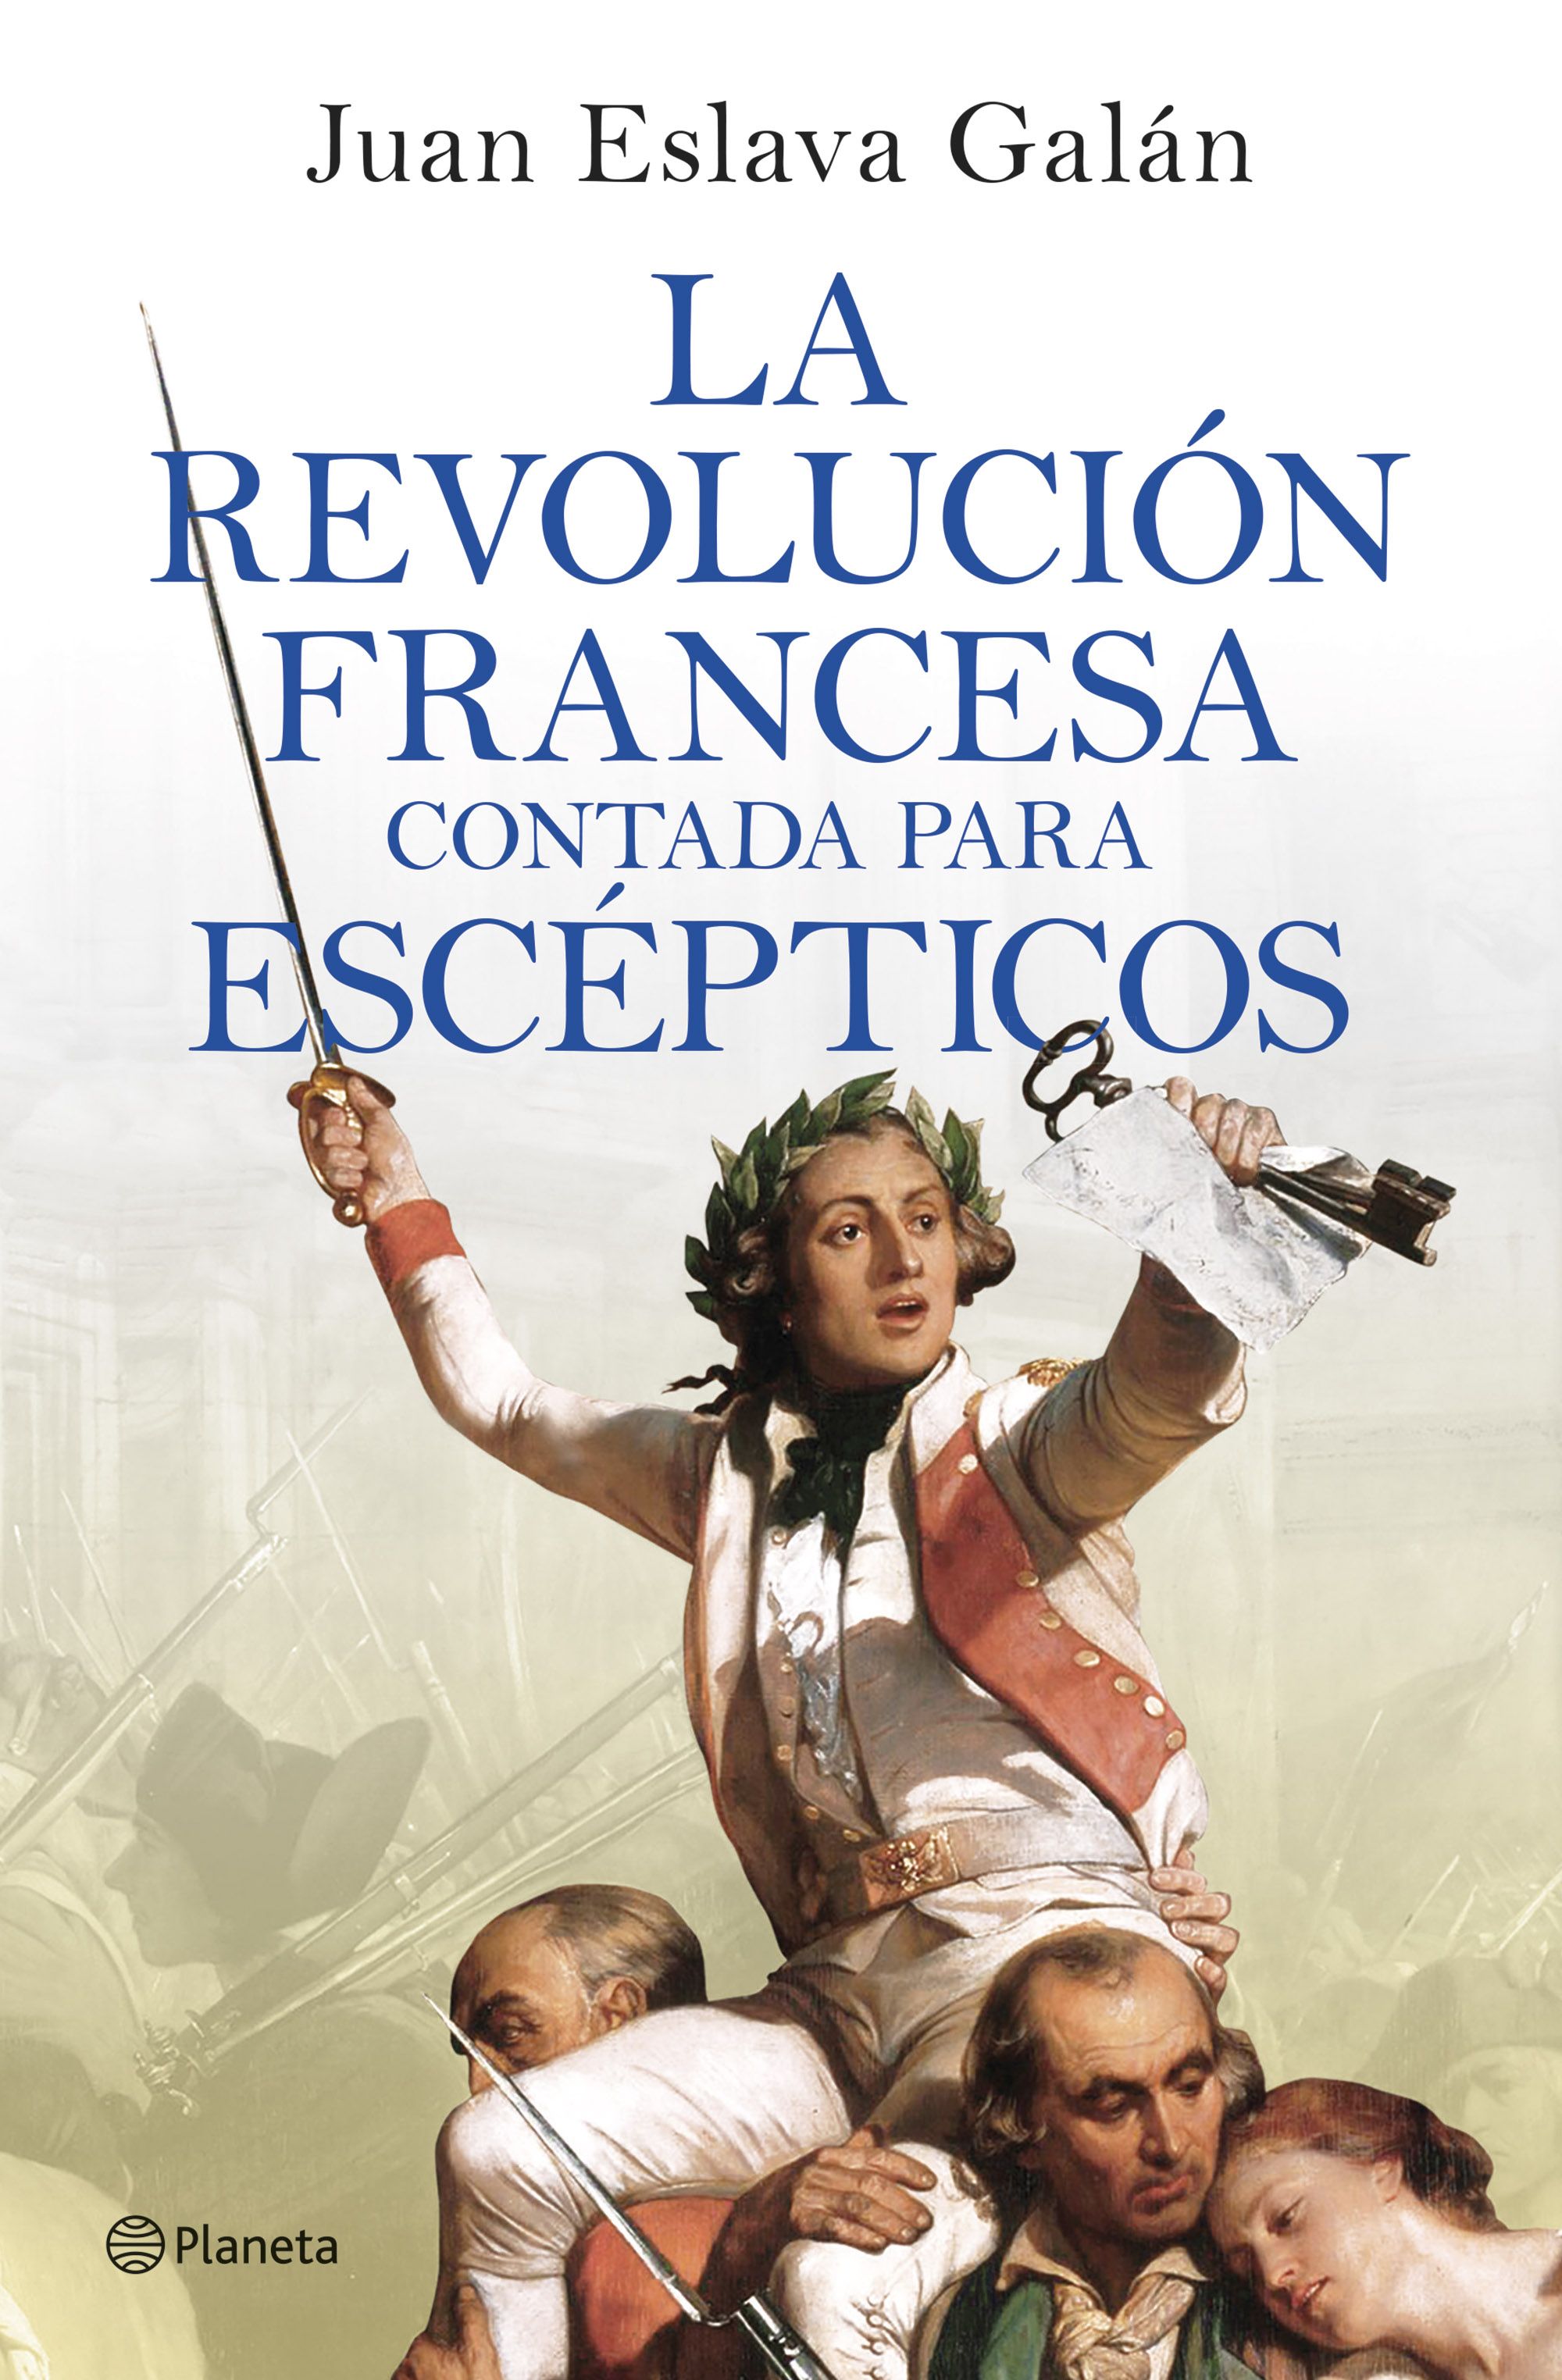 La Revolución Francesa contada para escépticos. 9788408277613